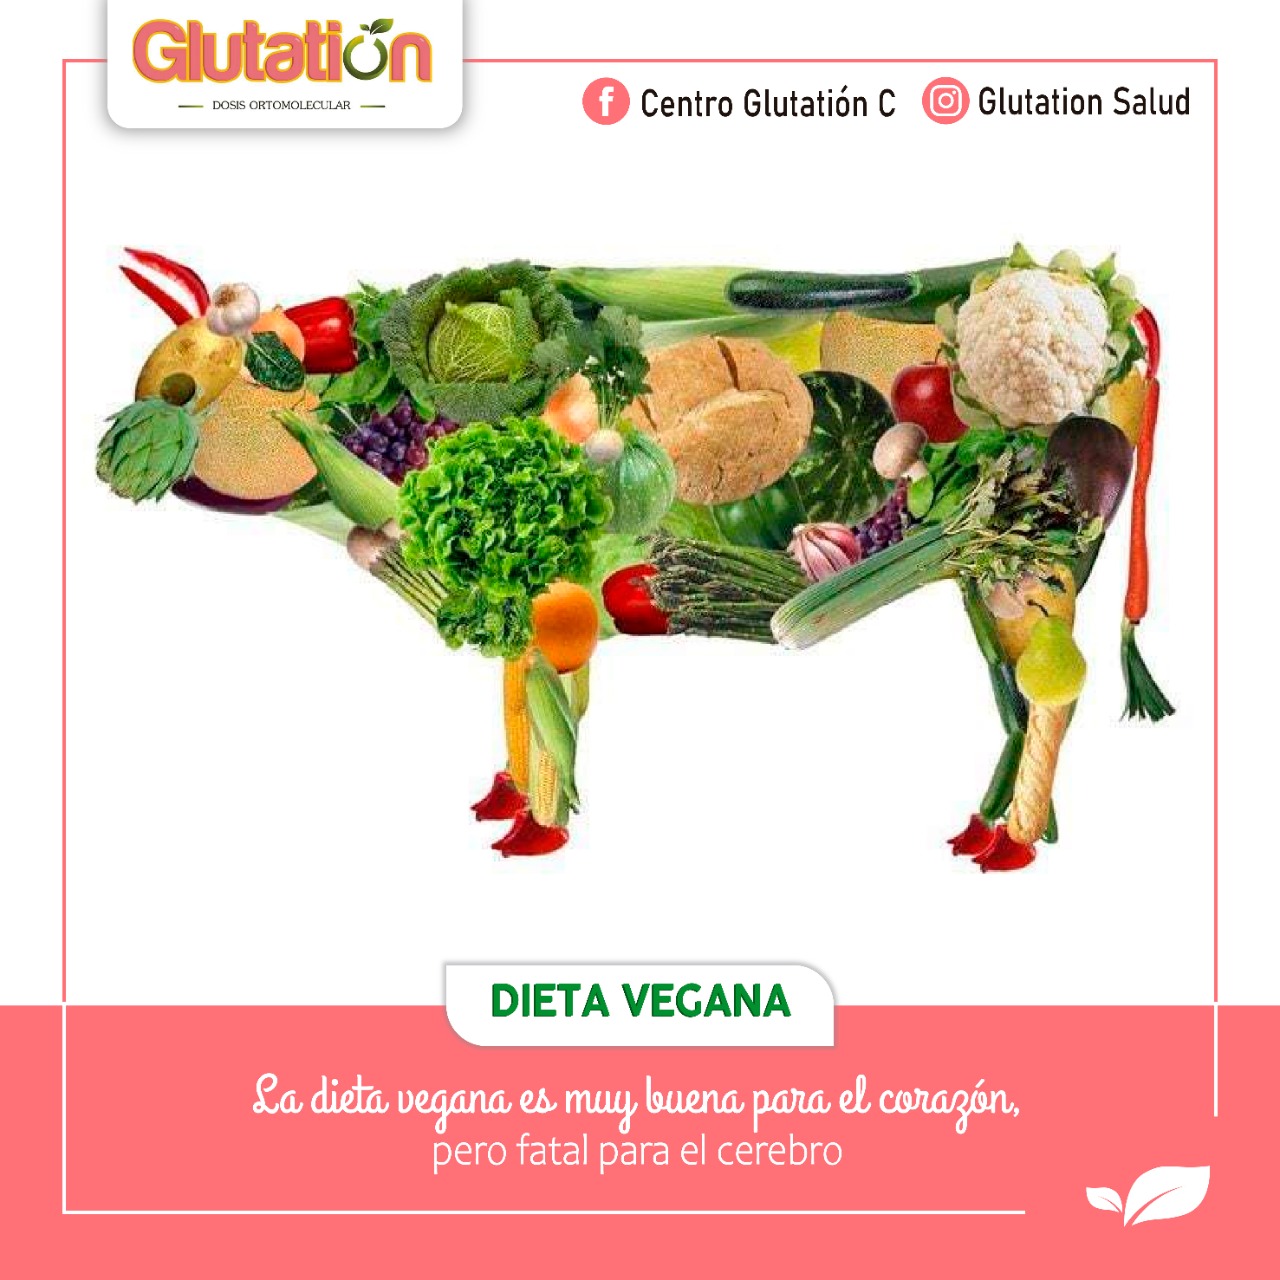 Dieta Vegana: Beneficios y Riesgos.